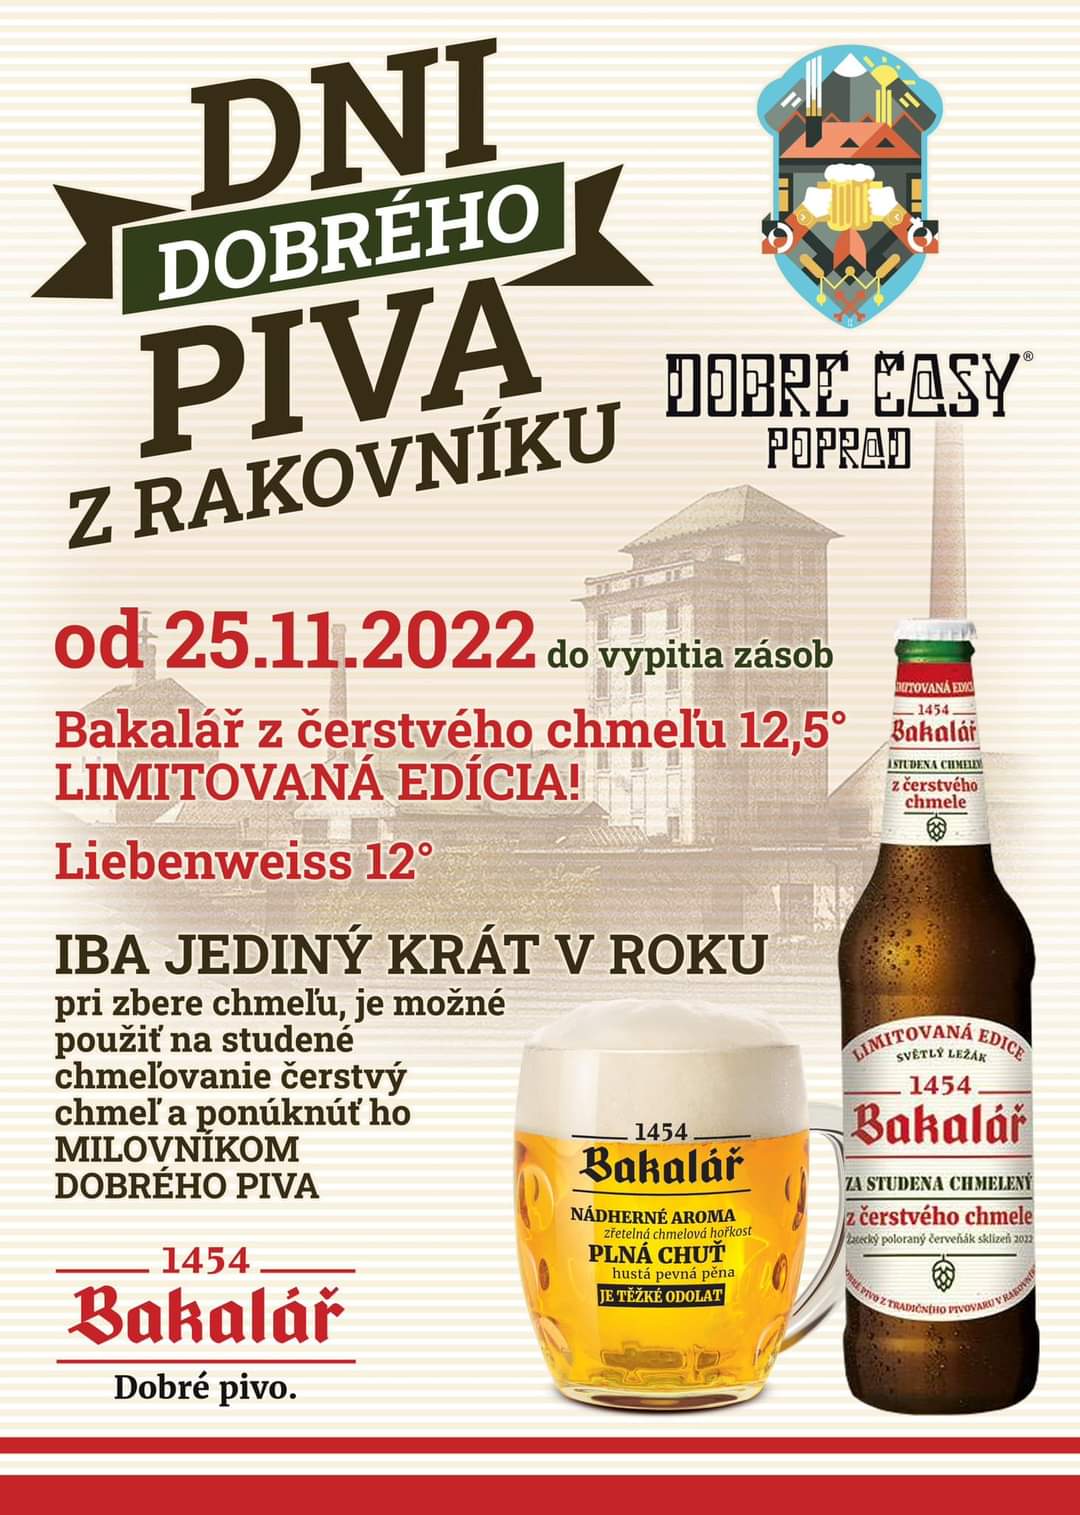 Dni dobrého piva z Rakovníka - od 25.11.2022 - Dobré Časy Poprad